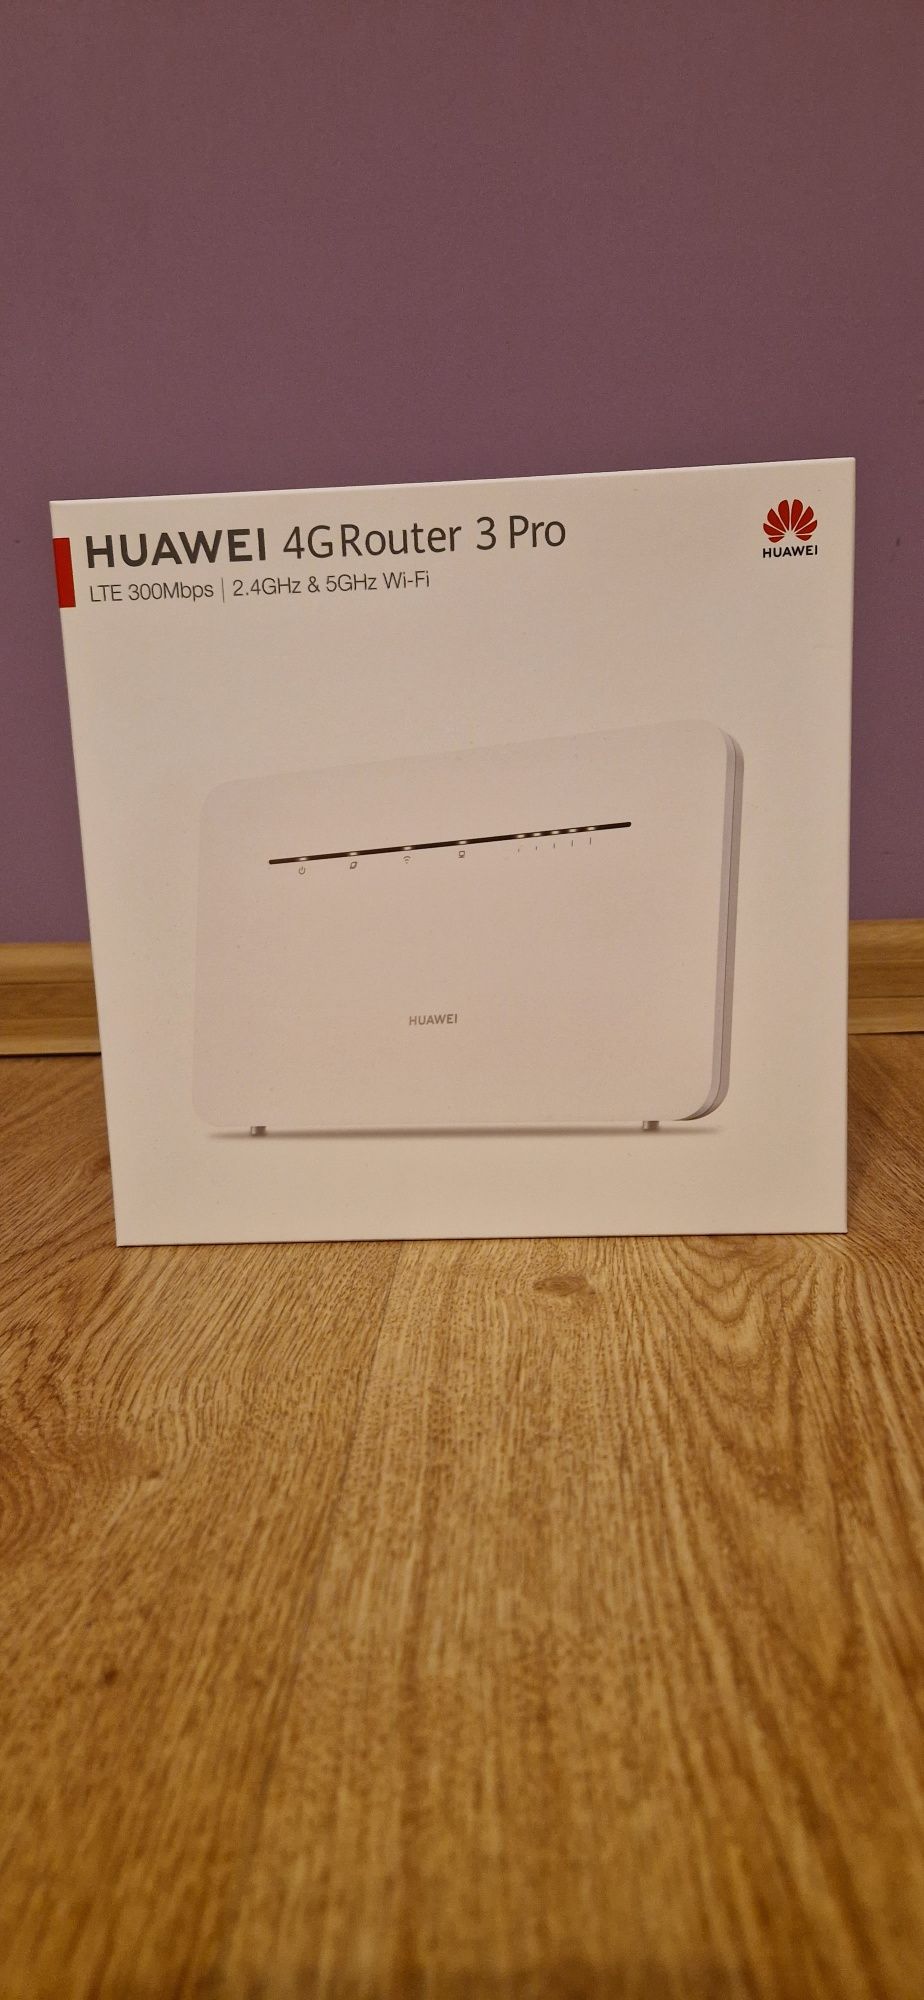 Huawei 4G router 3 pro model B535-232